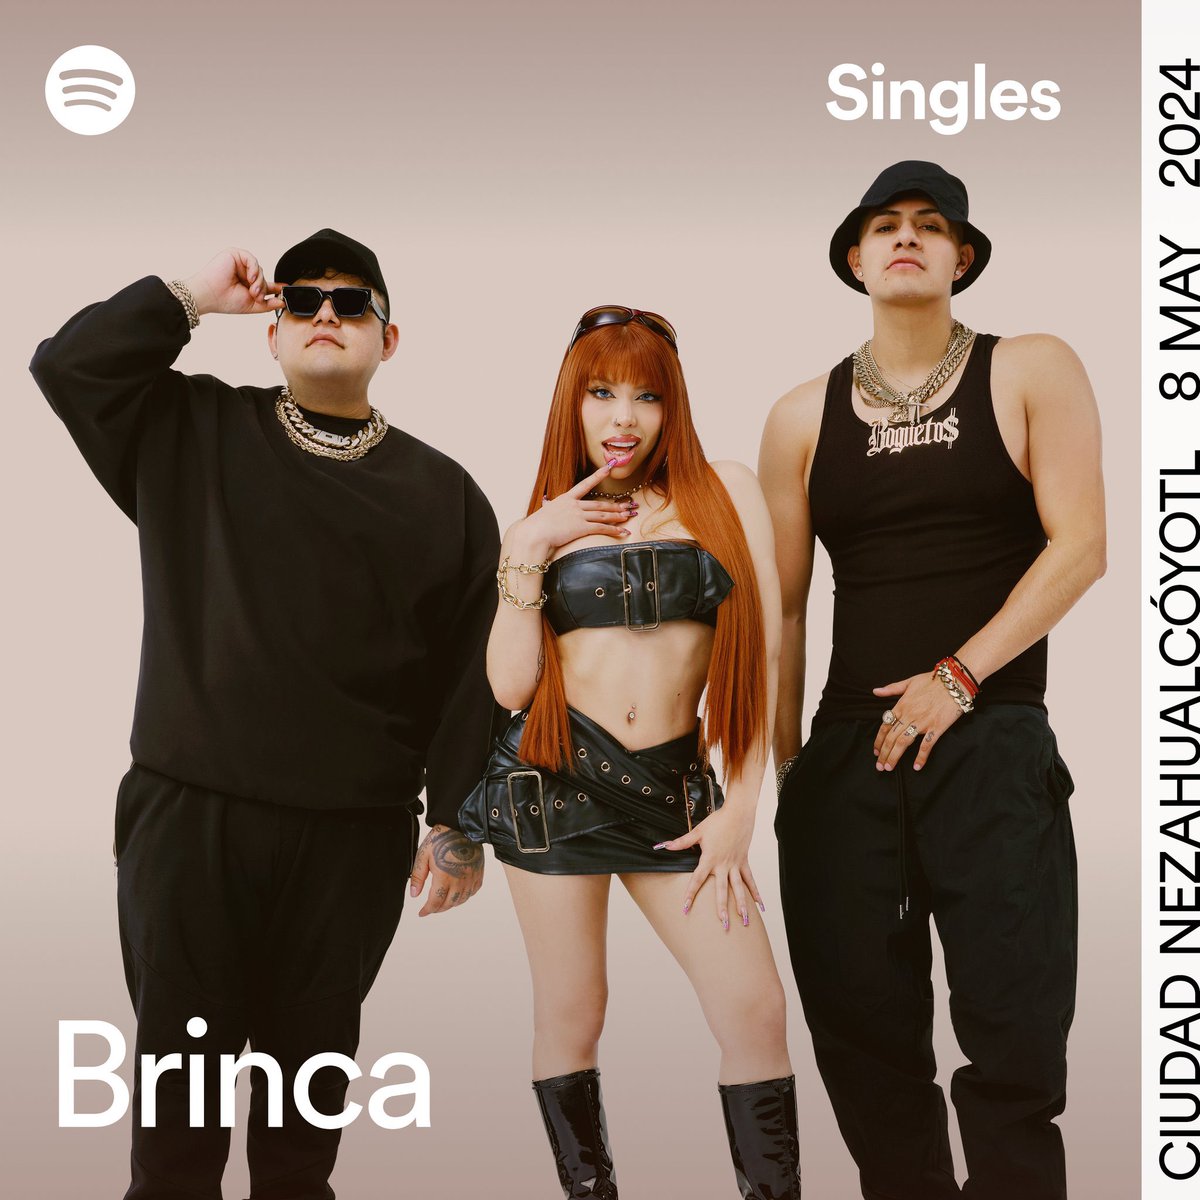 Uzielito Mix, Yeri Mua y El Bogueto estrenan “Brinca” Ya disponible en Spotify